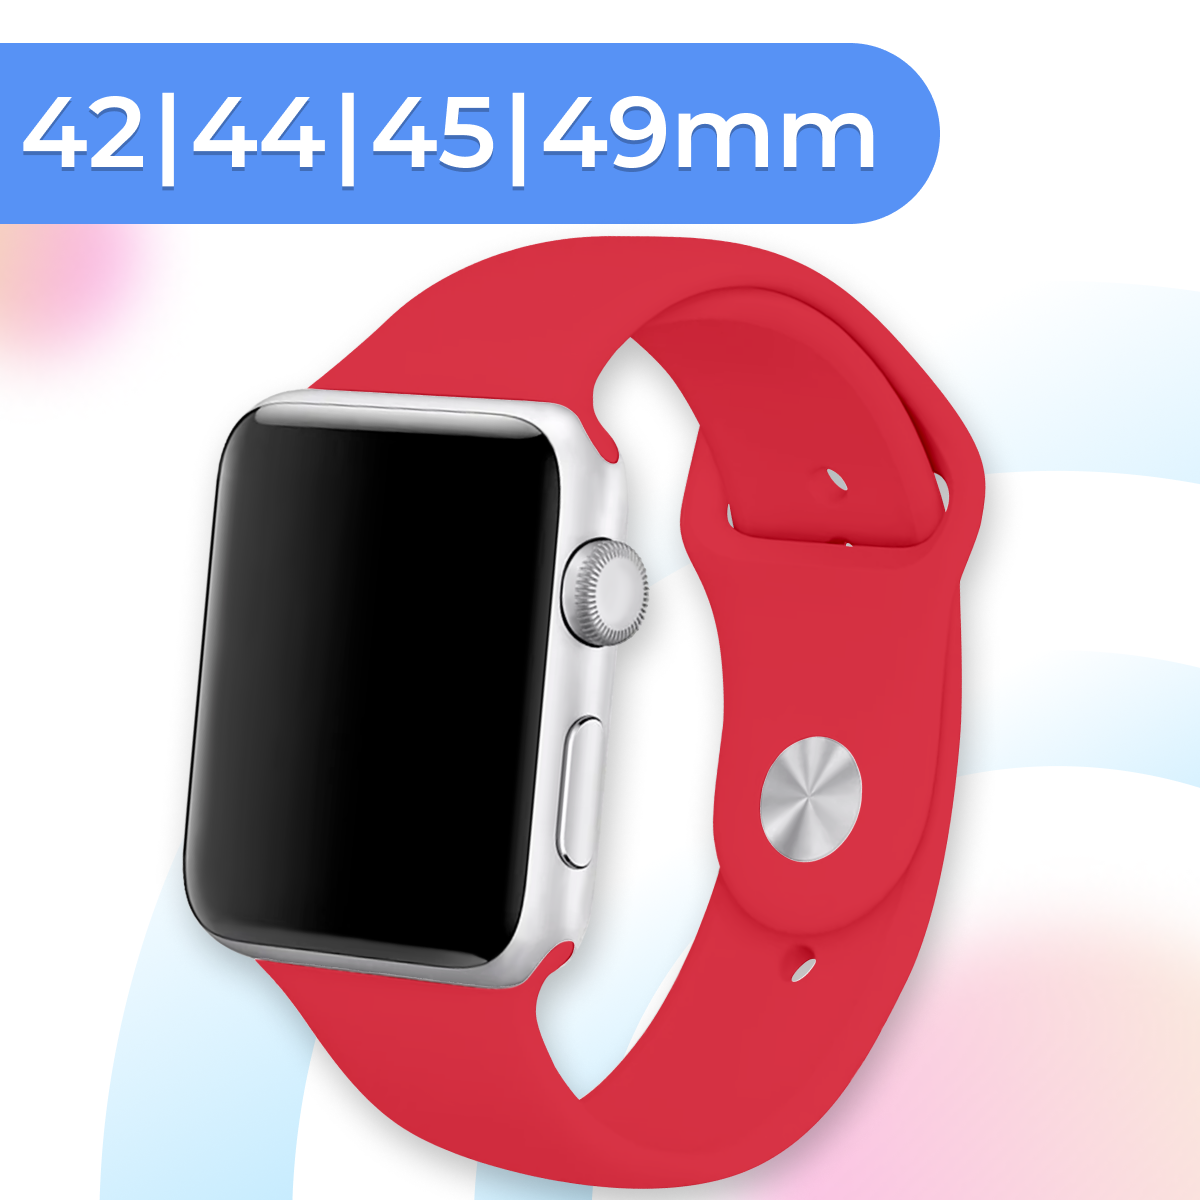 Силиконовый ремешок для умных часов Apple Watch 42-44-45-49 mm / Спортивный сменный браслет для смарт часов Эпл Вотч 1-9, SE серии / Red